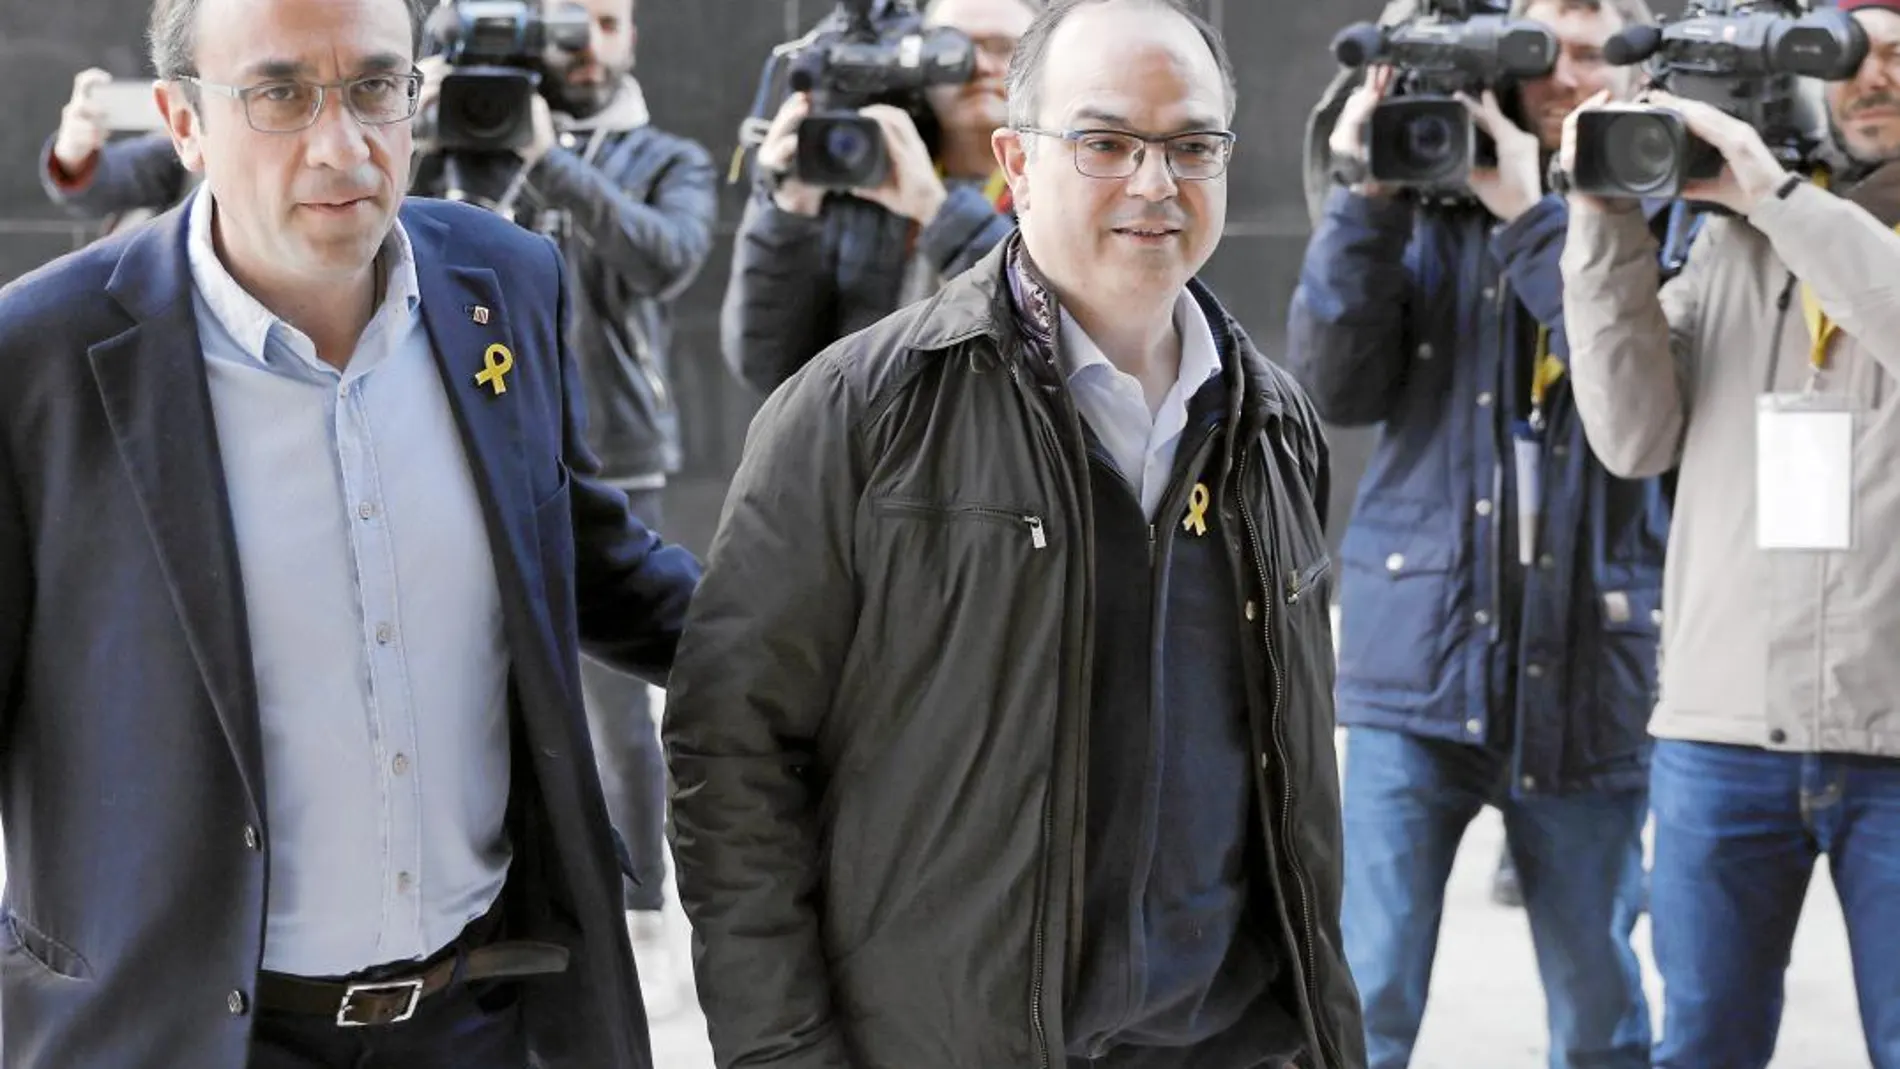 Josep Rull y Jordi Turull a su entrada ayer a la reunión del consell nacional del PDeCAT celebrada en Barcelona para fijar la postura de su partido ante la semana decisiva que empieza para Cataluña.